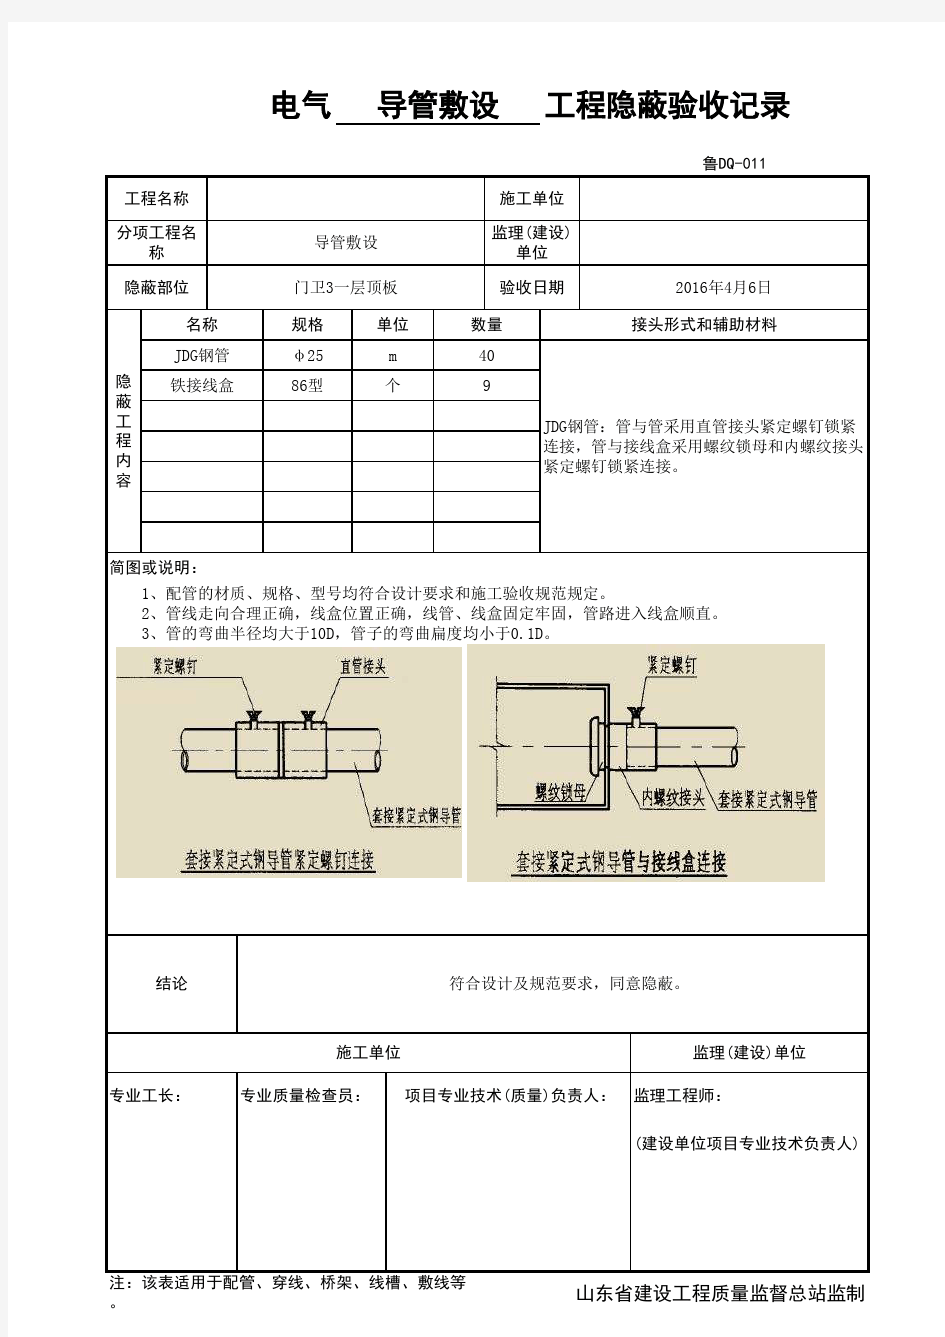 鲁DQ-011电气导管敷设工程隐蔽验收记录(JDG)